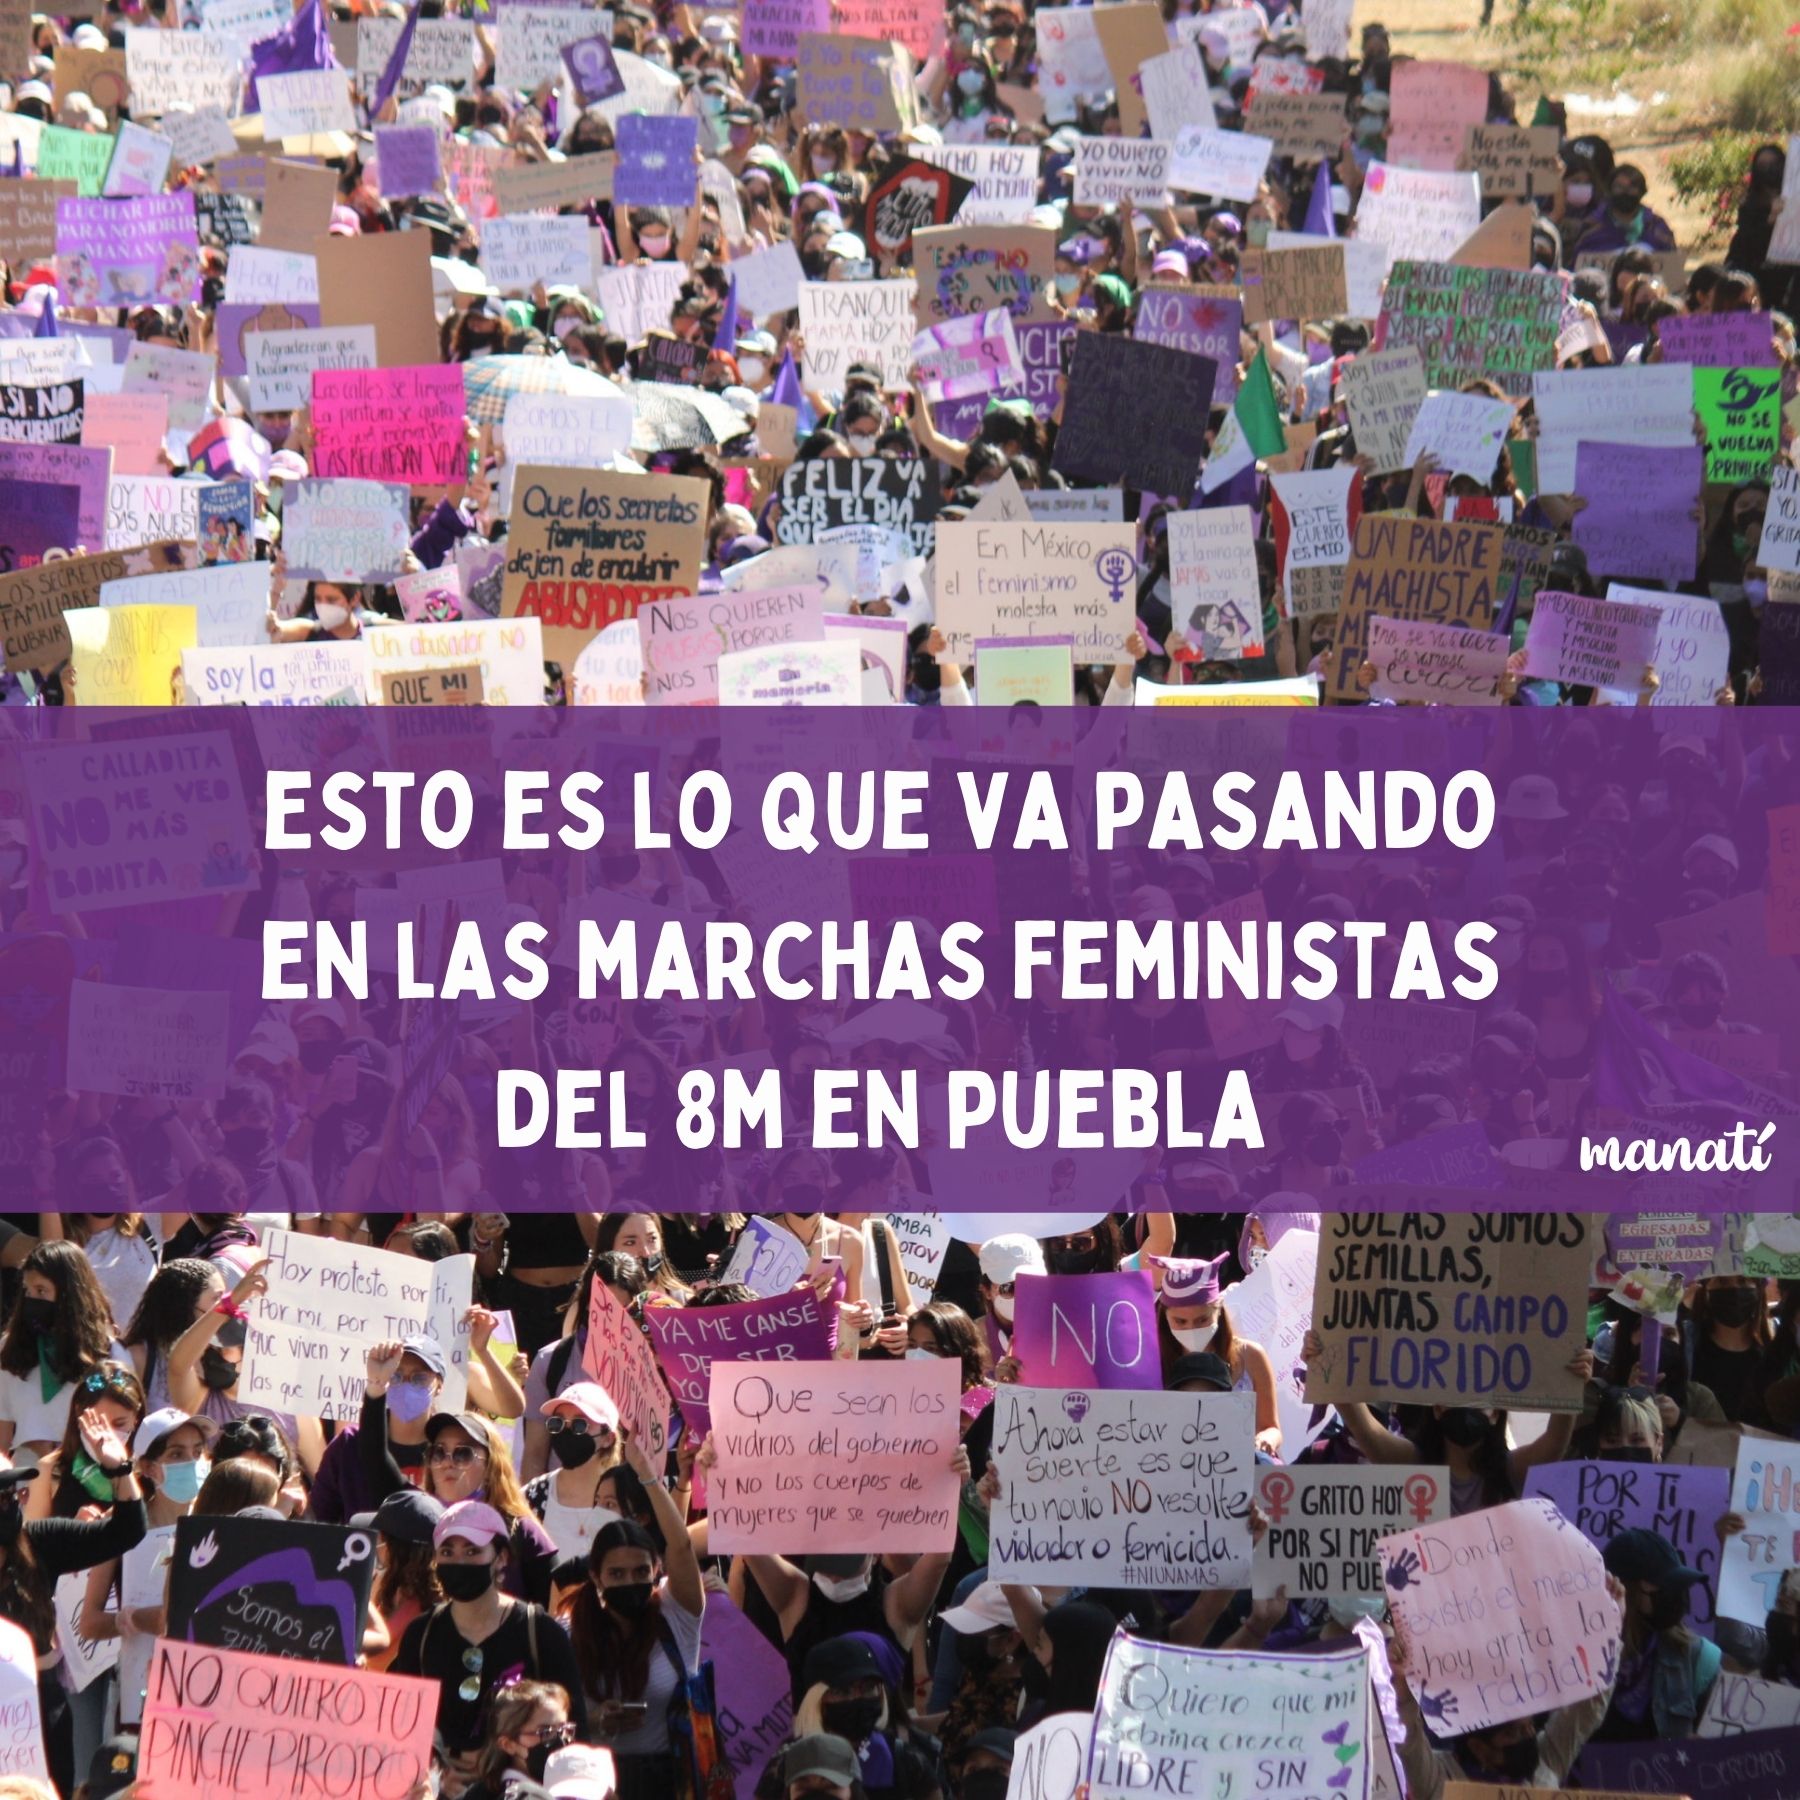 8M Marcha feminista puebla